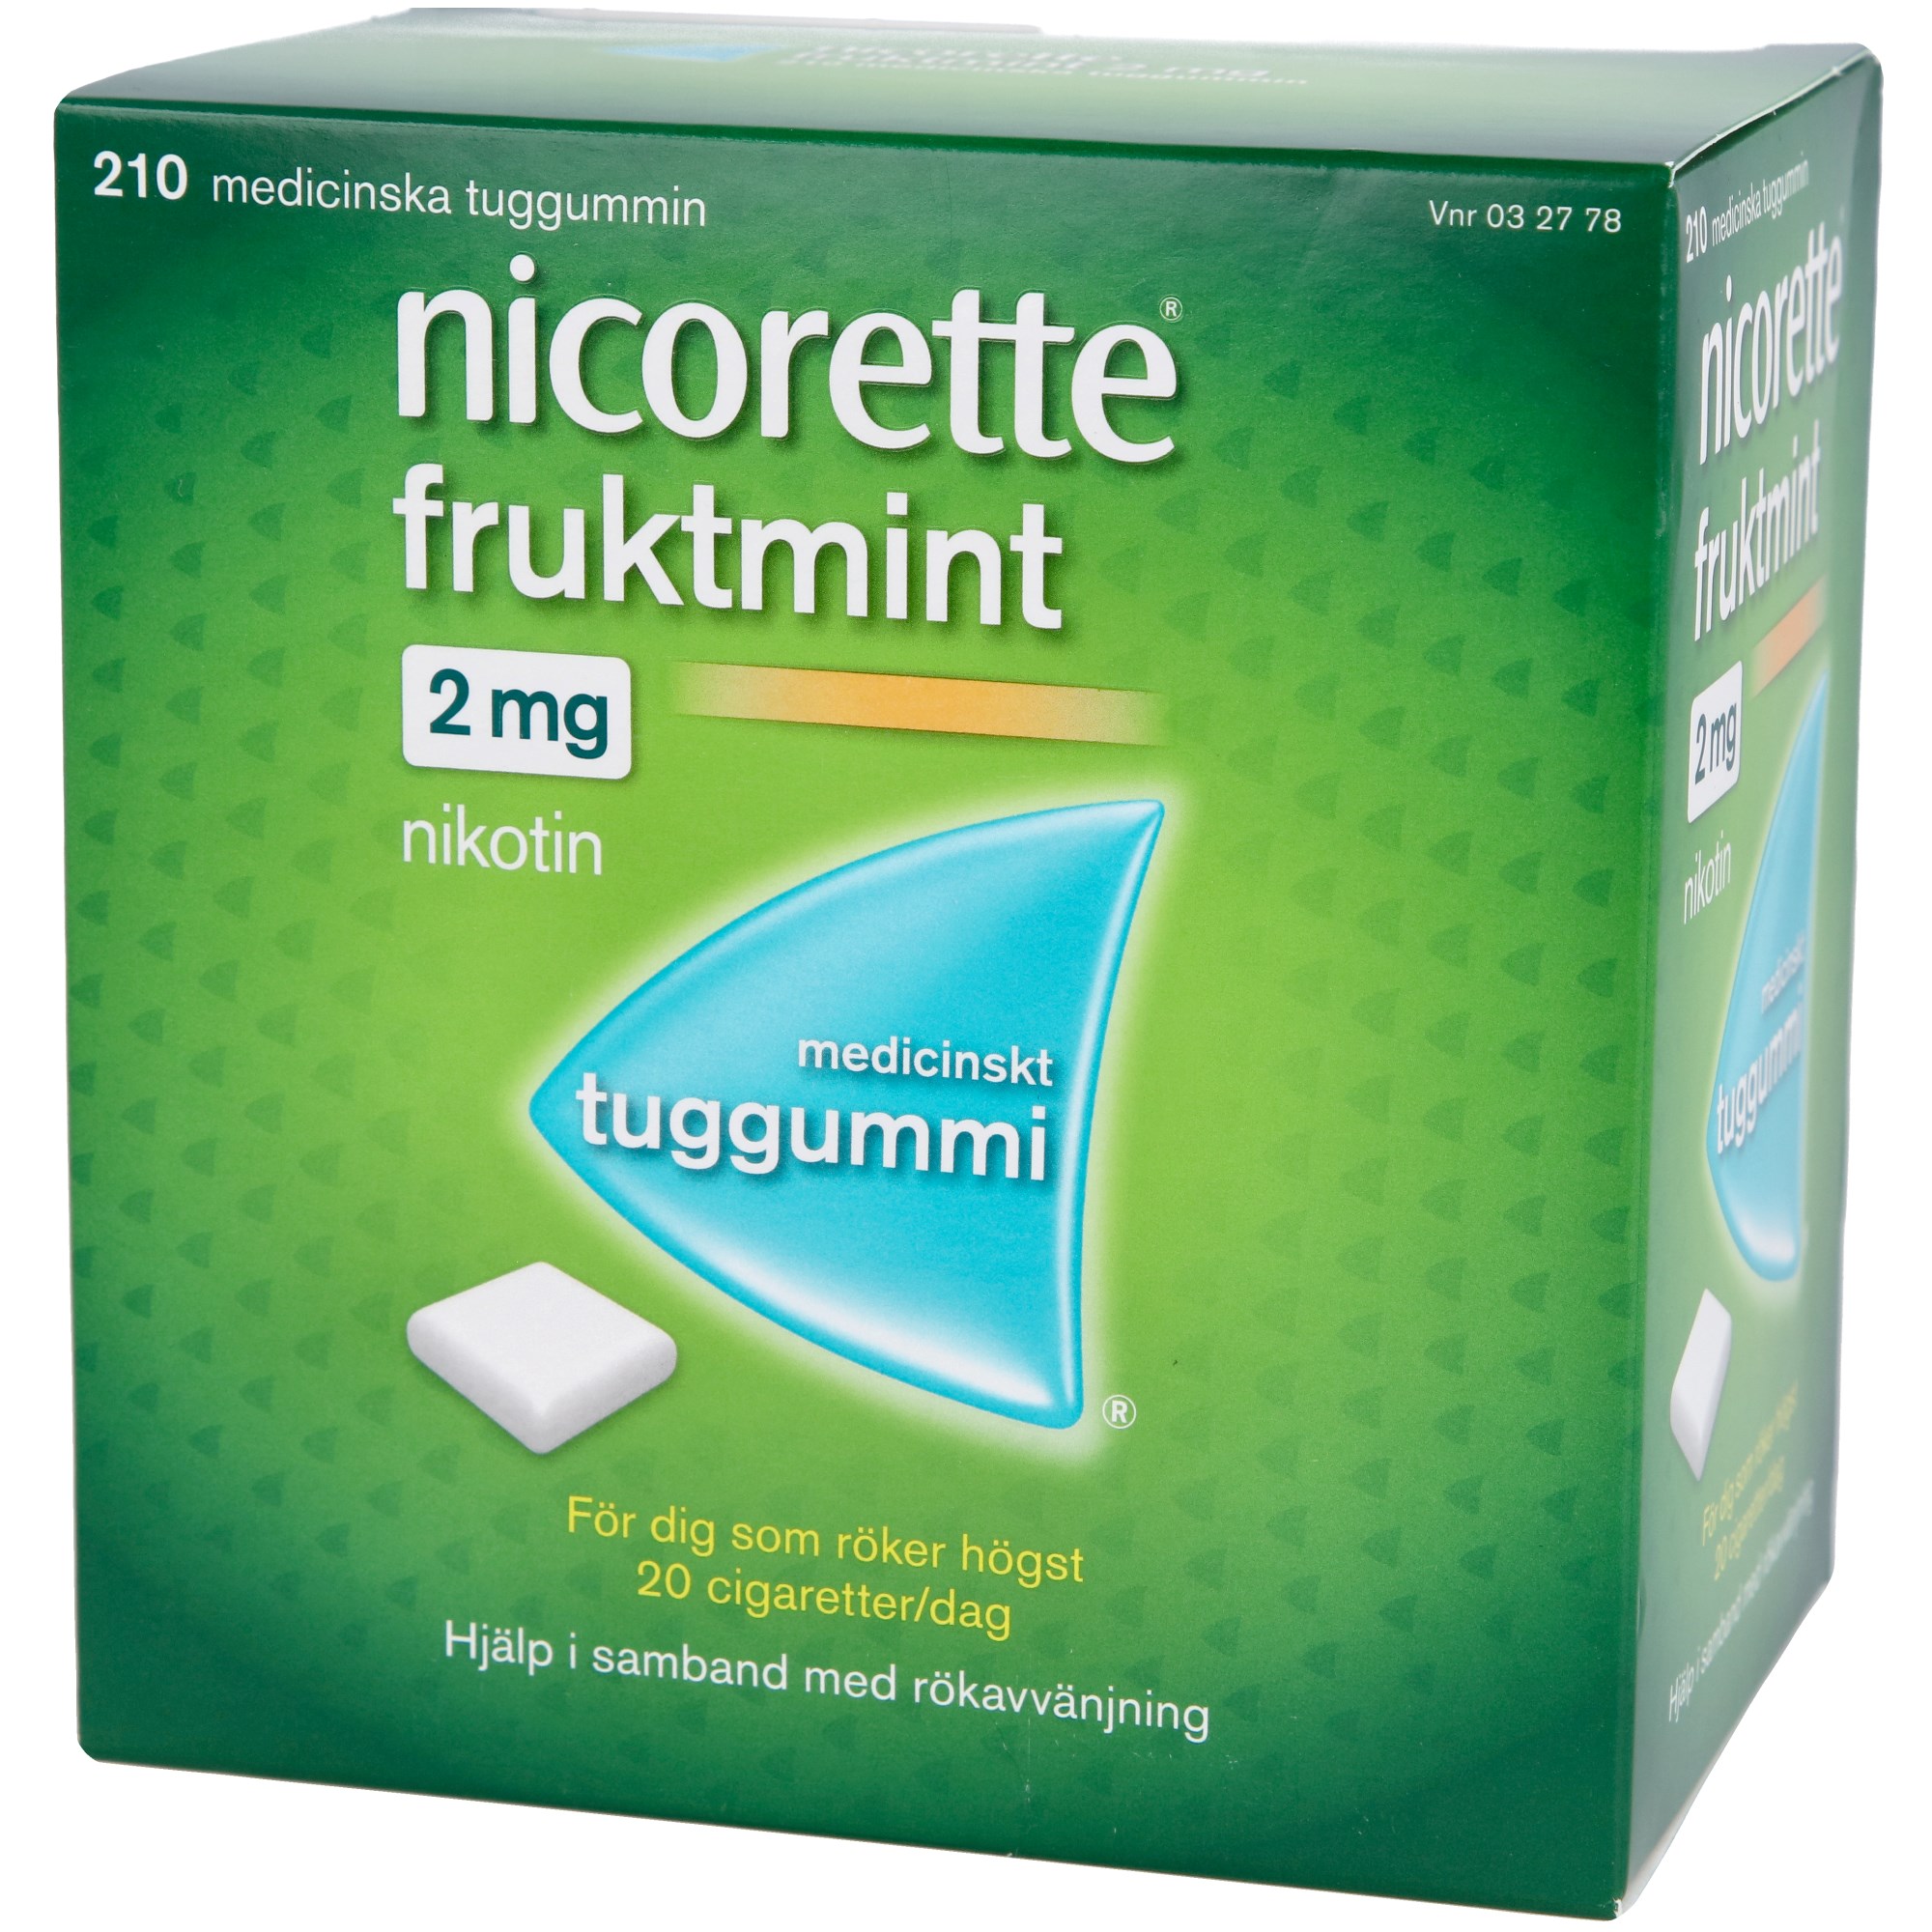 Läs mer om Nicorette Medicinskt tuggummi Fruktmint 2mg 210 st